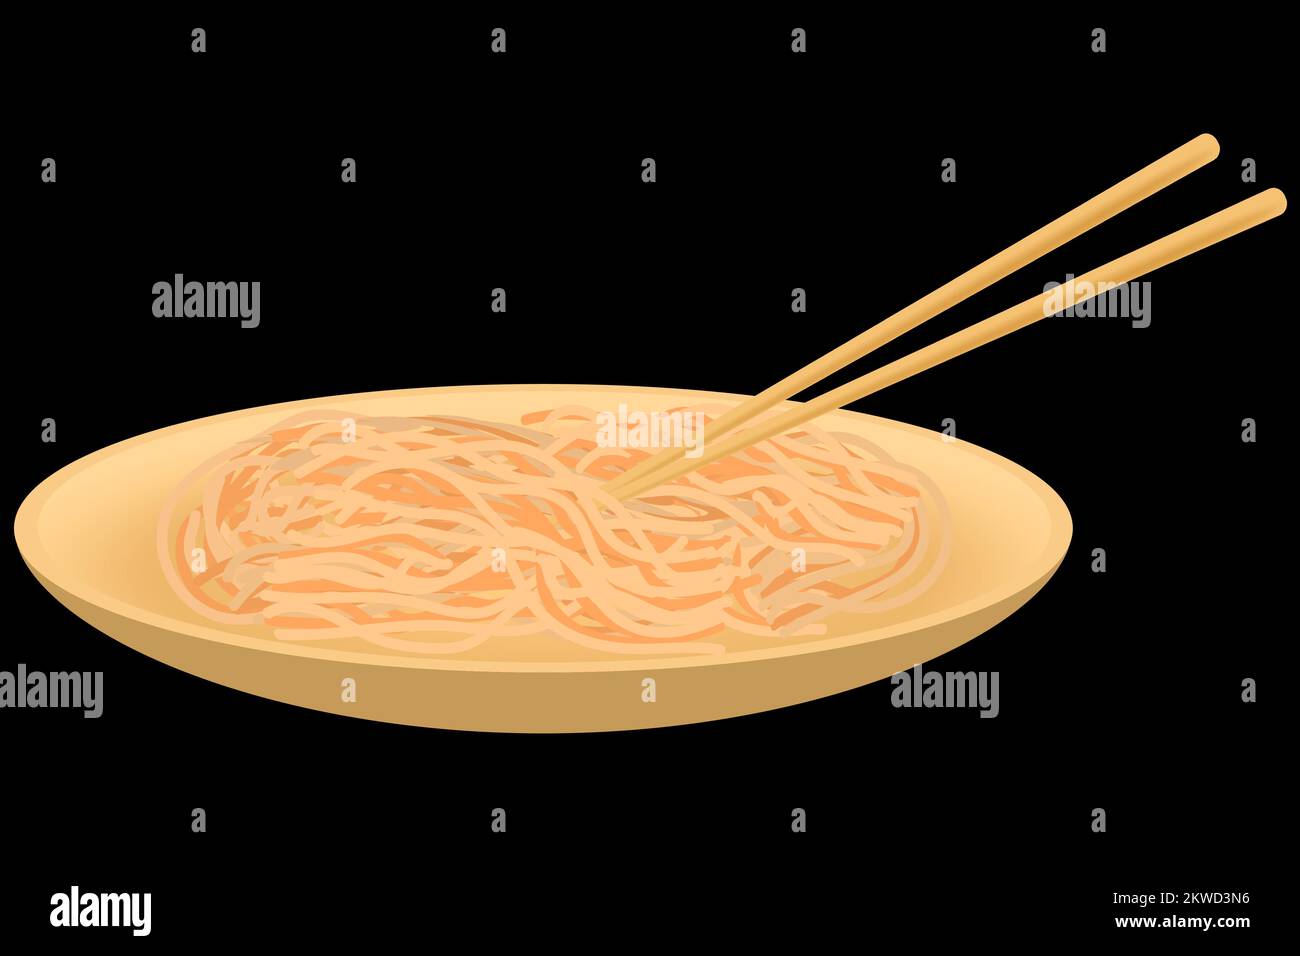 Wok Noodles dans une assiette de bambou avec des baguettes sur fond noir. Image vectorielle. Illustration de Vecteur